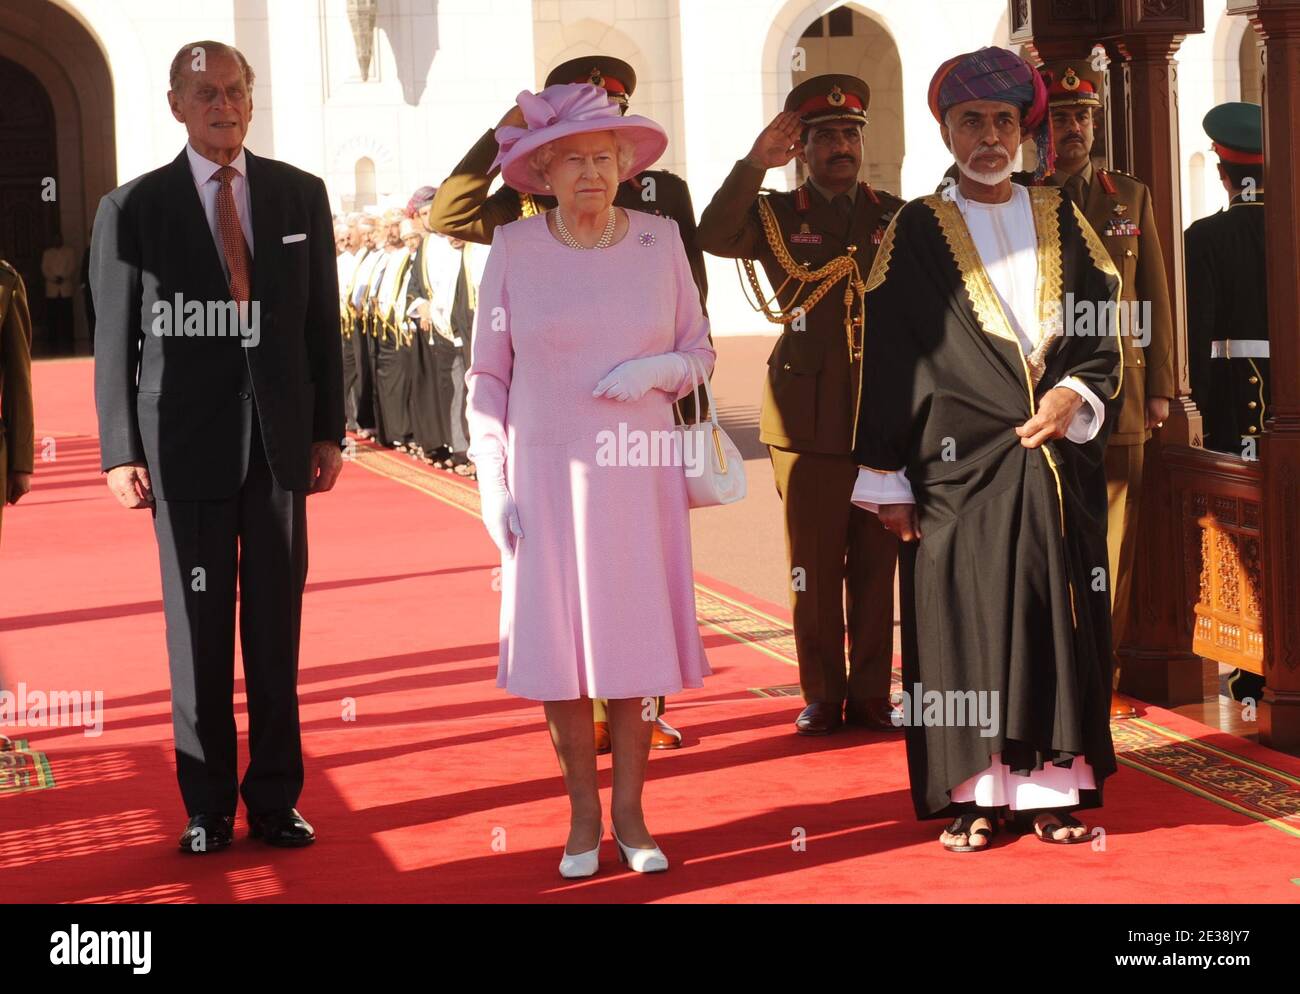 La reine Elizabeth II de Grande-Bretagne marche avec le sultan d'Oman, sa Majesté le sultan Qaboos bin Said et le duc d'Édimbourg lors d'une visite au Palais Al-Alam à Muscat, Oman, le 26 novembre 2010. Photo de ONA/Mousse/ABACAPRESS.COMM. Banque D'Images